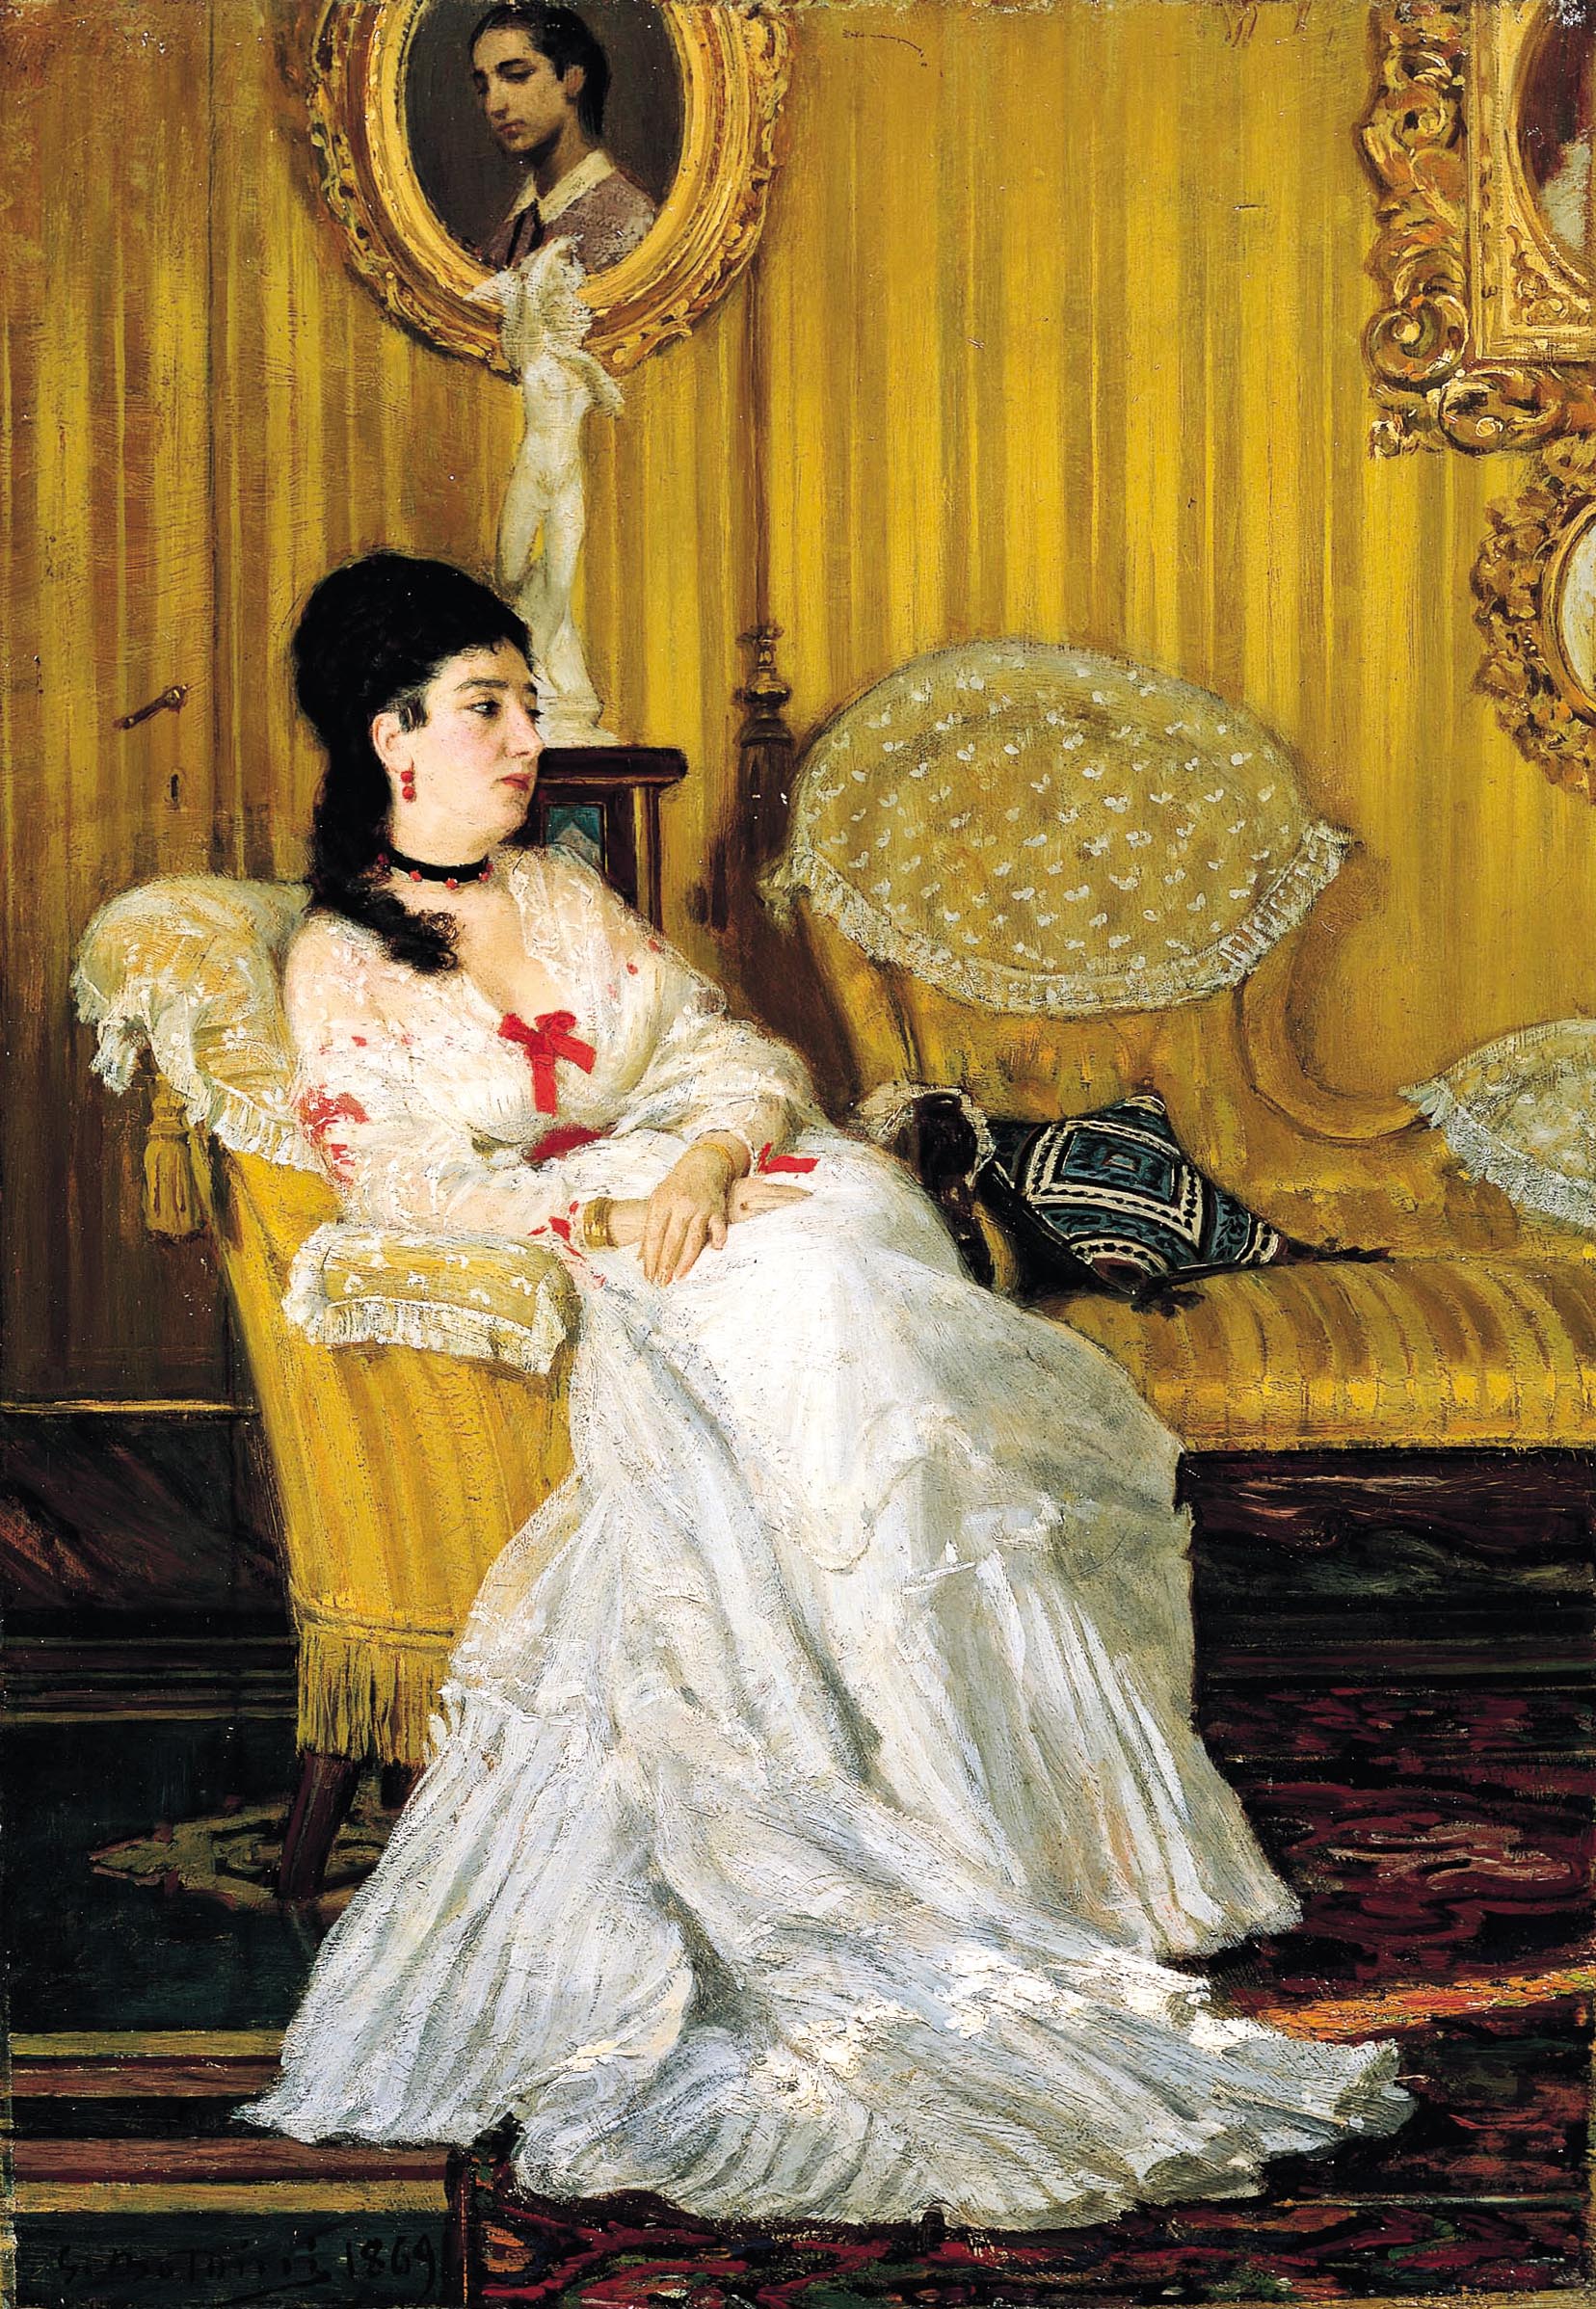 “Ritratto della contessa Carlotta Aloisi Papudoff”, 1869